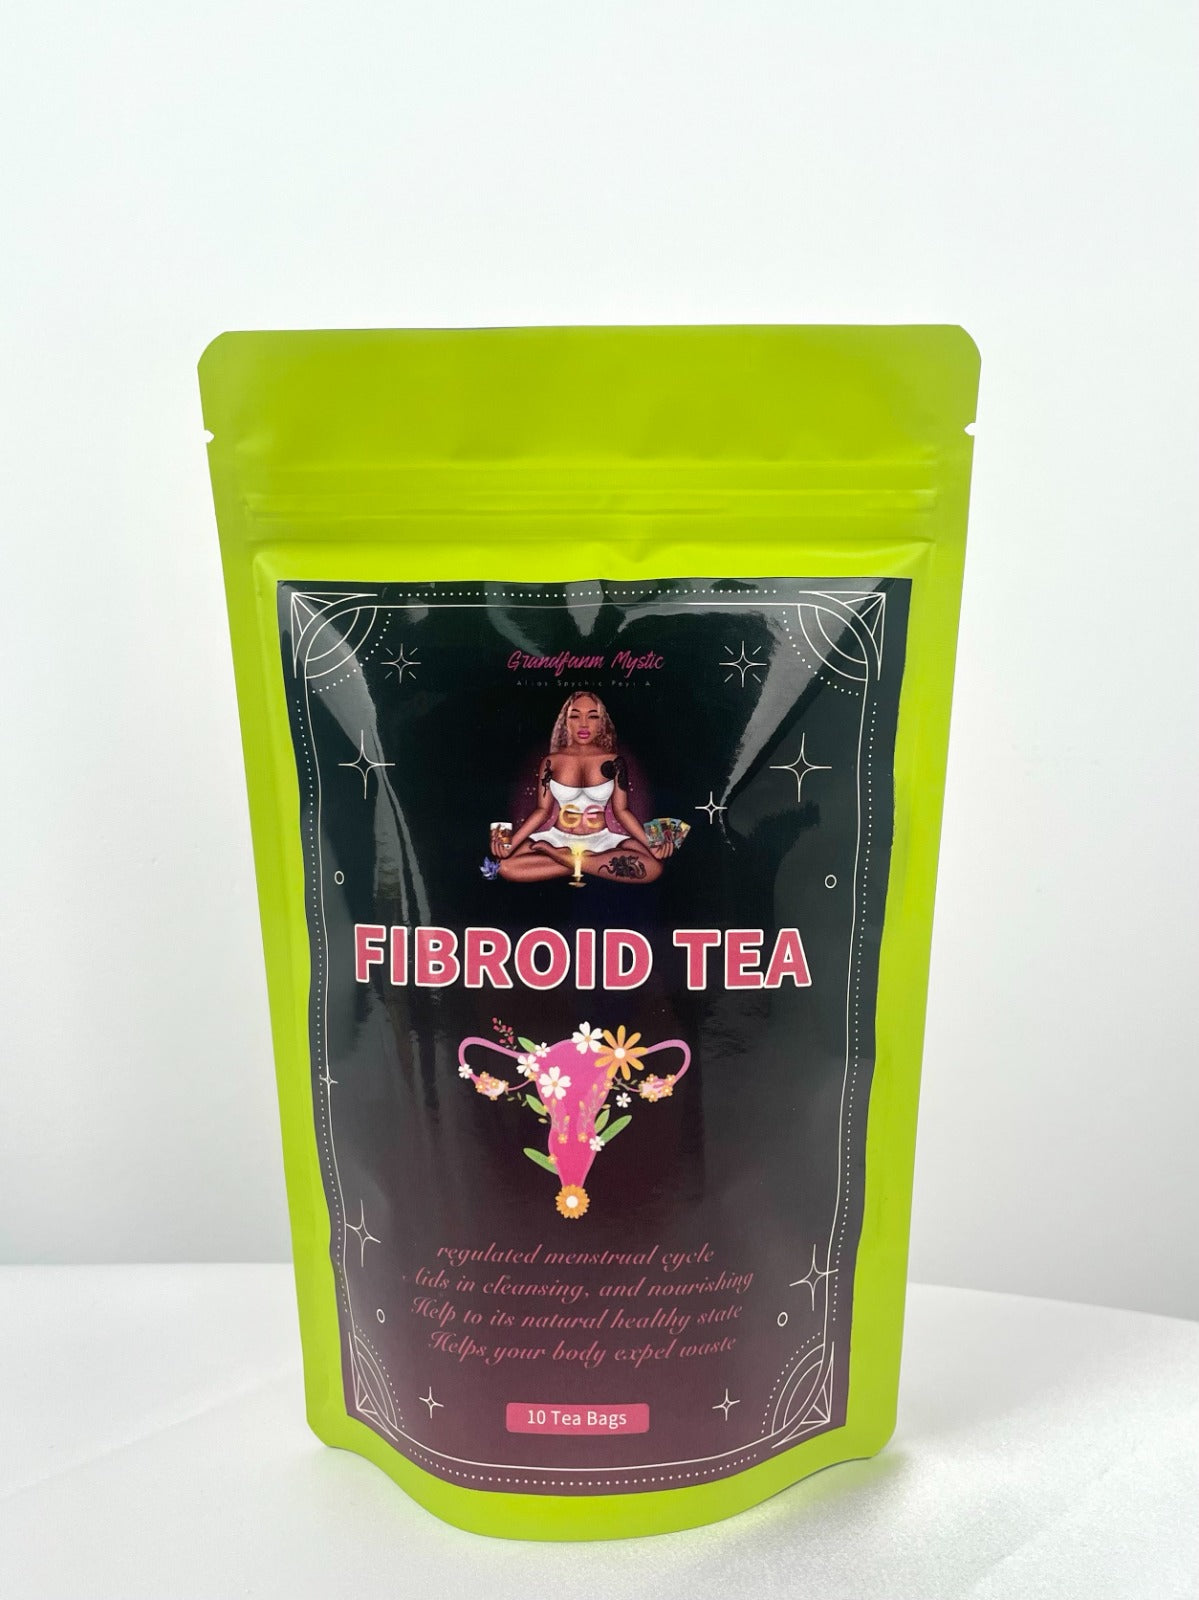 Fibroid tea